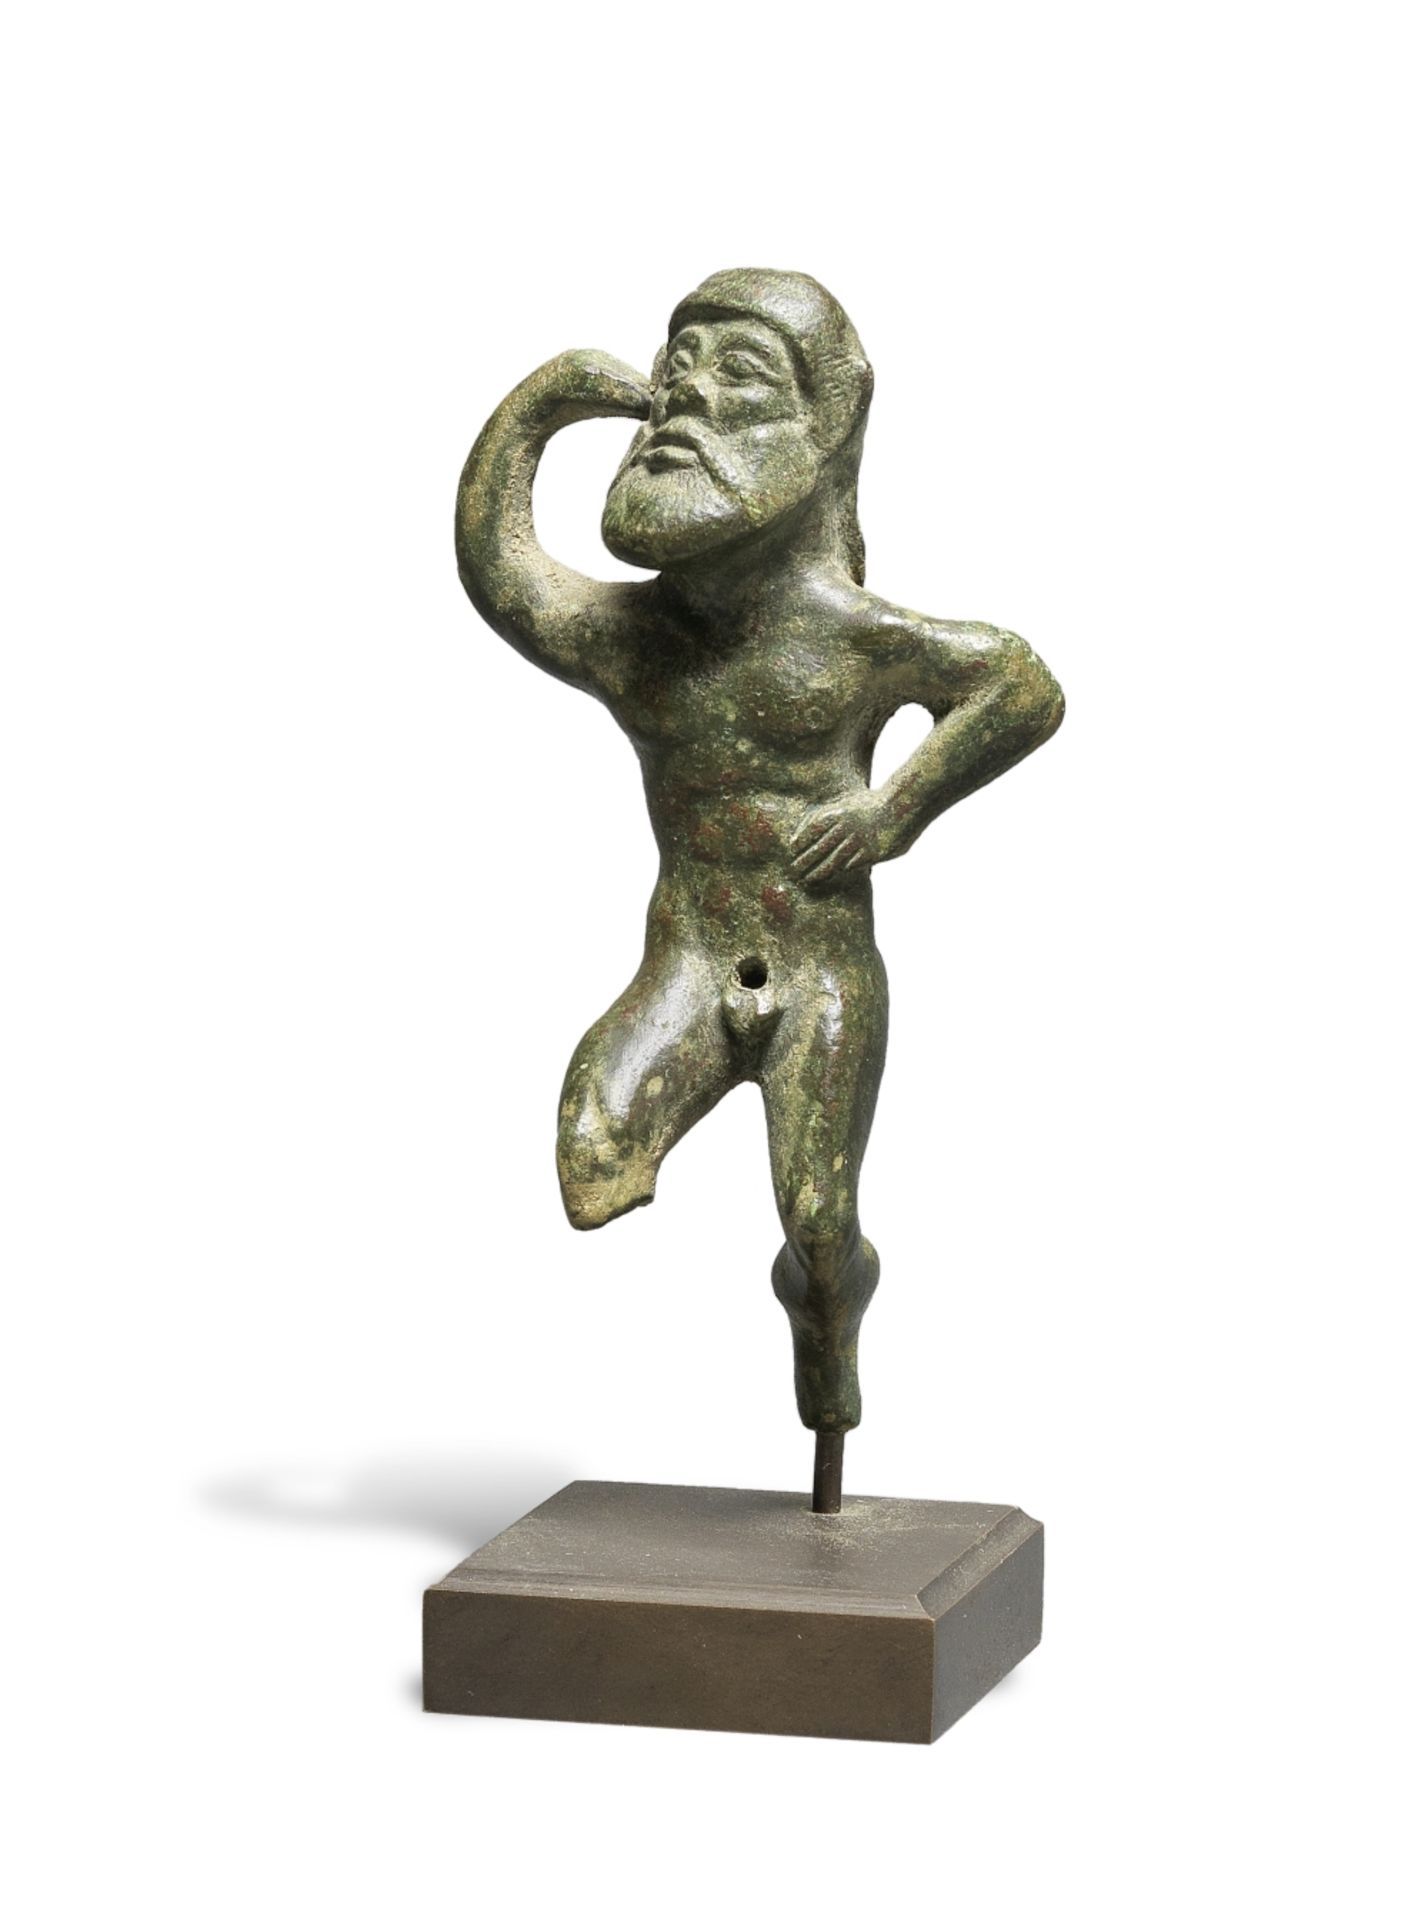 An Etruscan bronze figure of a dancing satyr